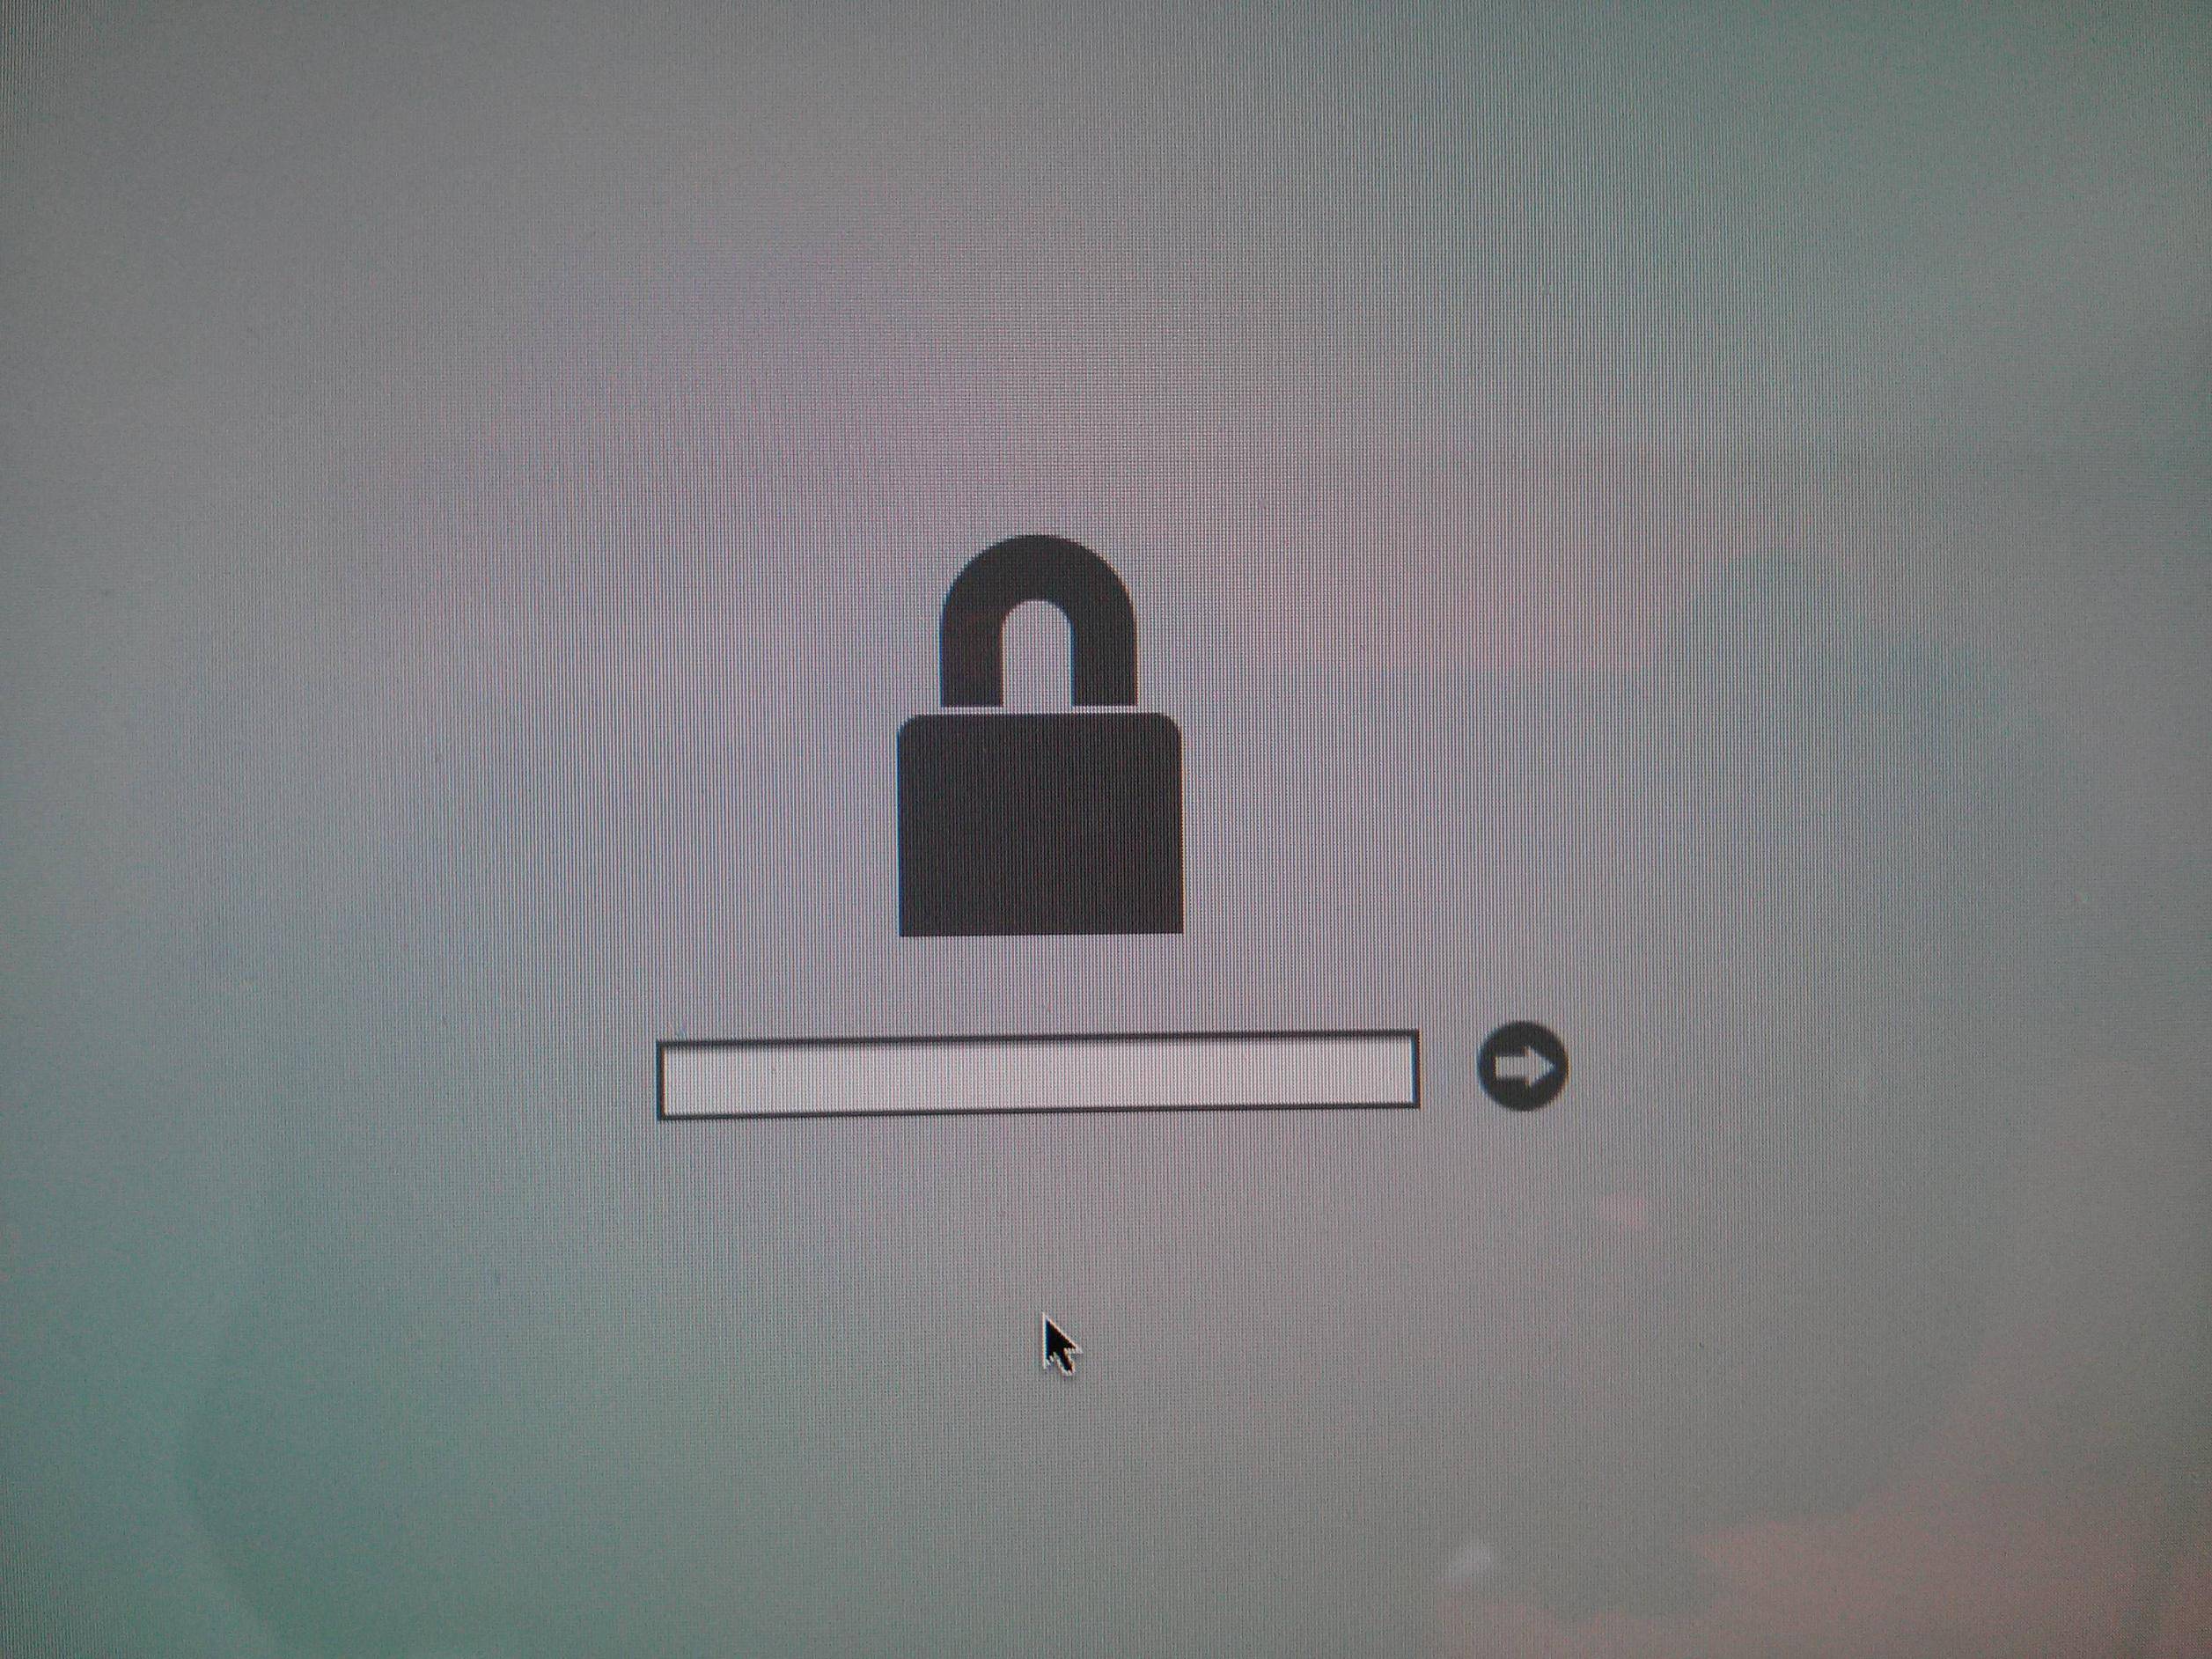 bypass mac firmware password